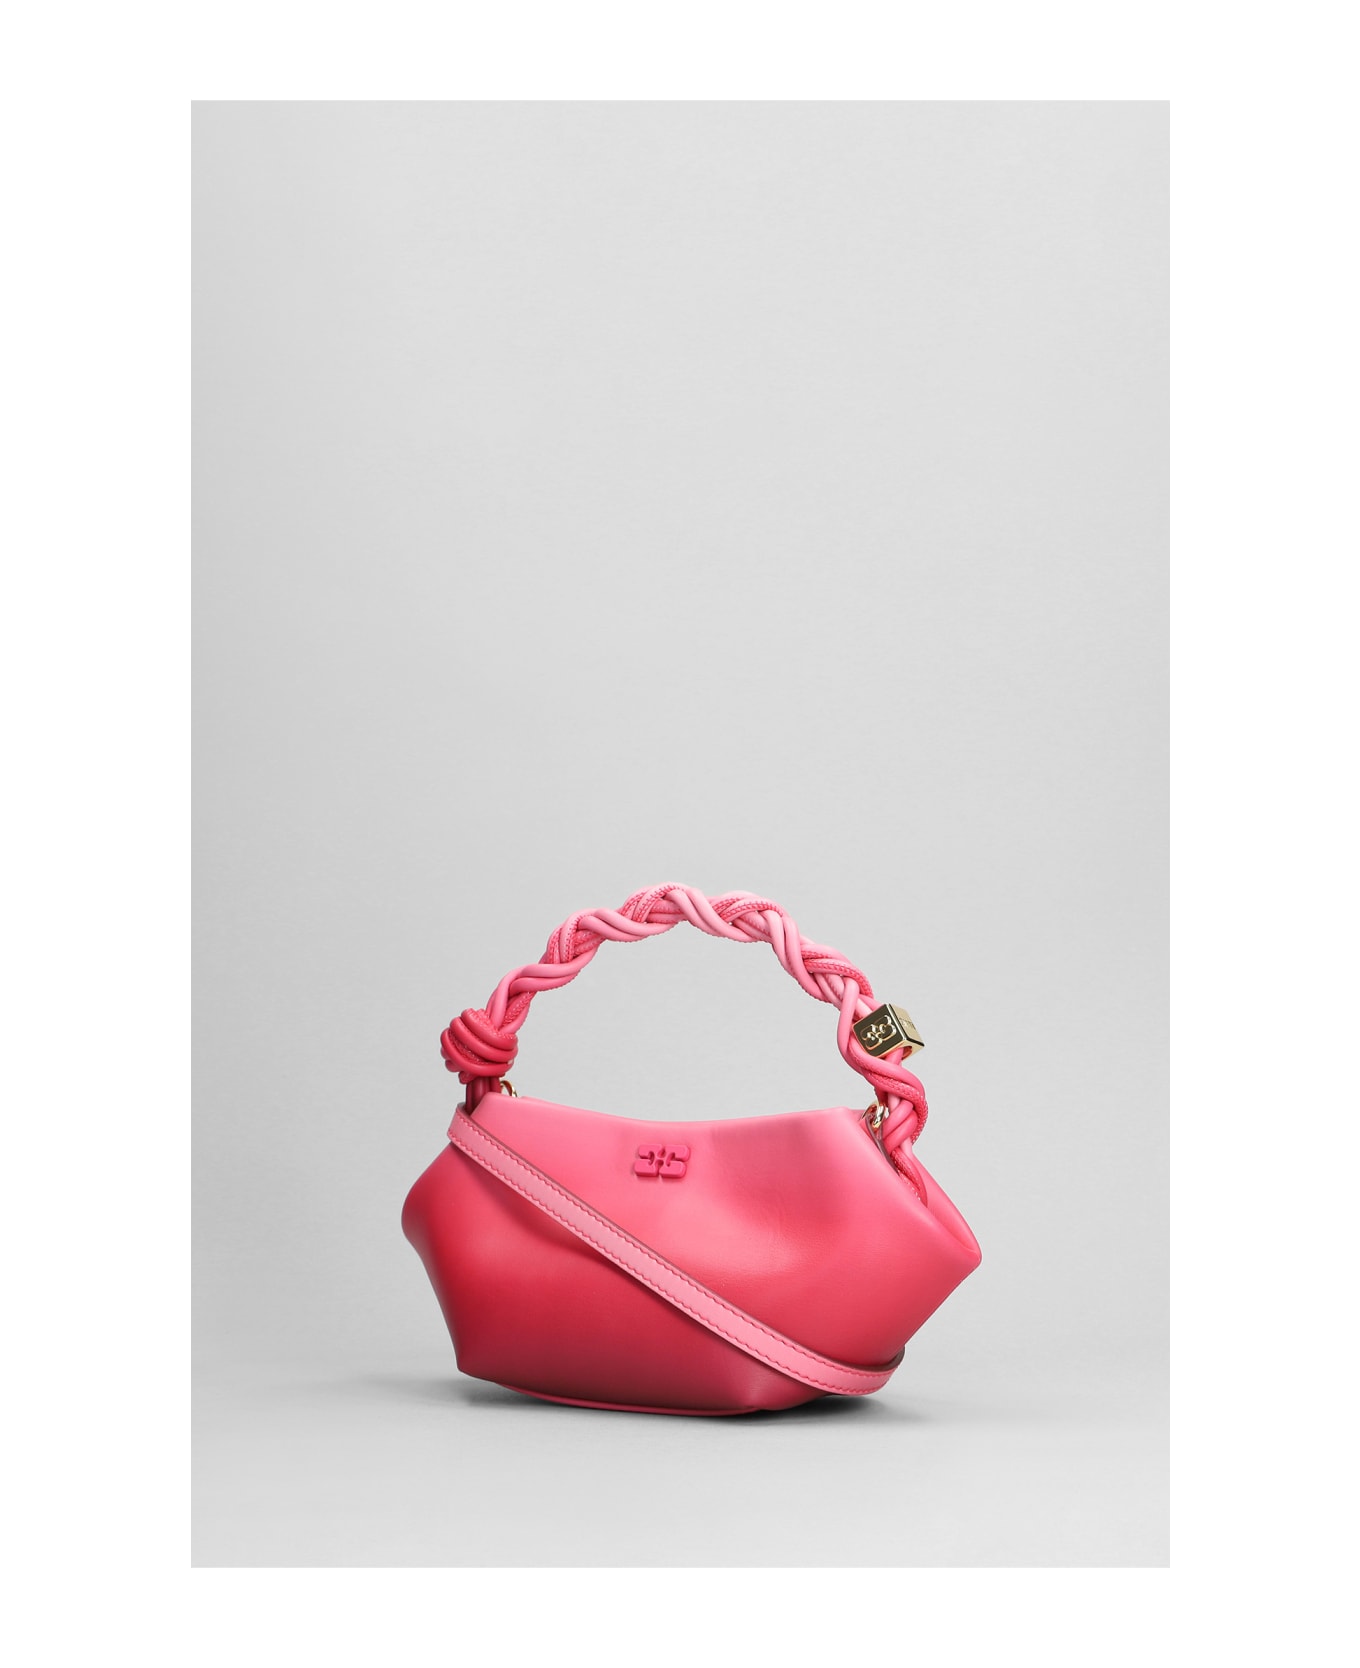 Ganni Hand Bag In Rose-pink Leather - rose-pink